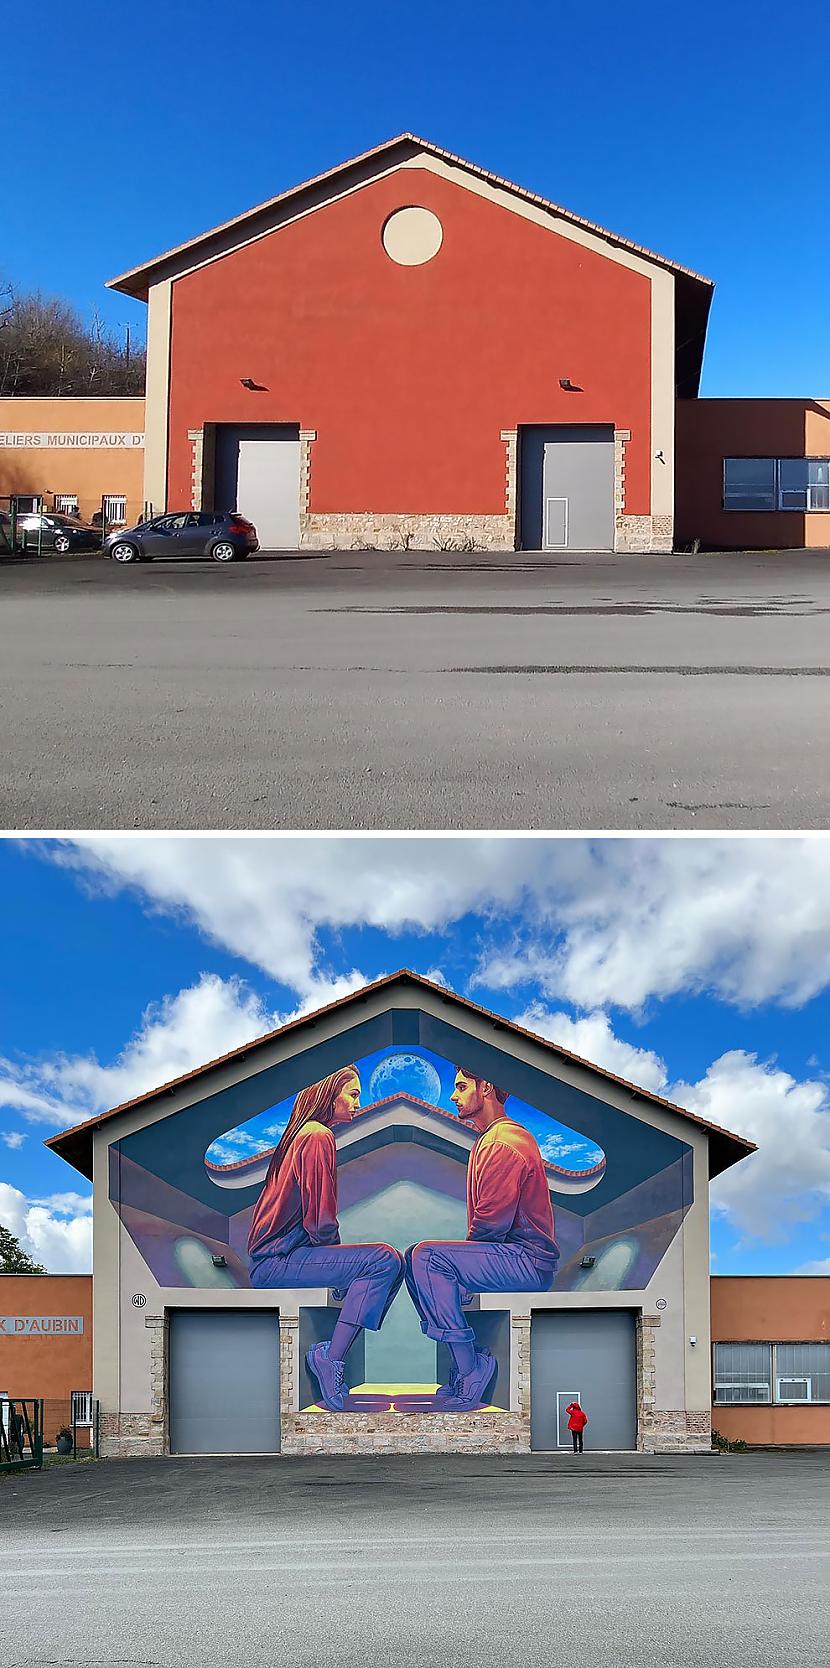  Autors: Zibenzellis69 Šis mākslinieks izveido satriecošus 3D  gleznojumus uz ēku sienām